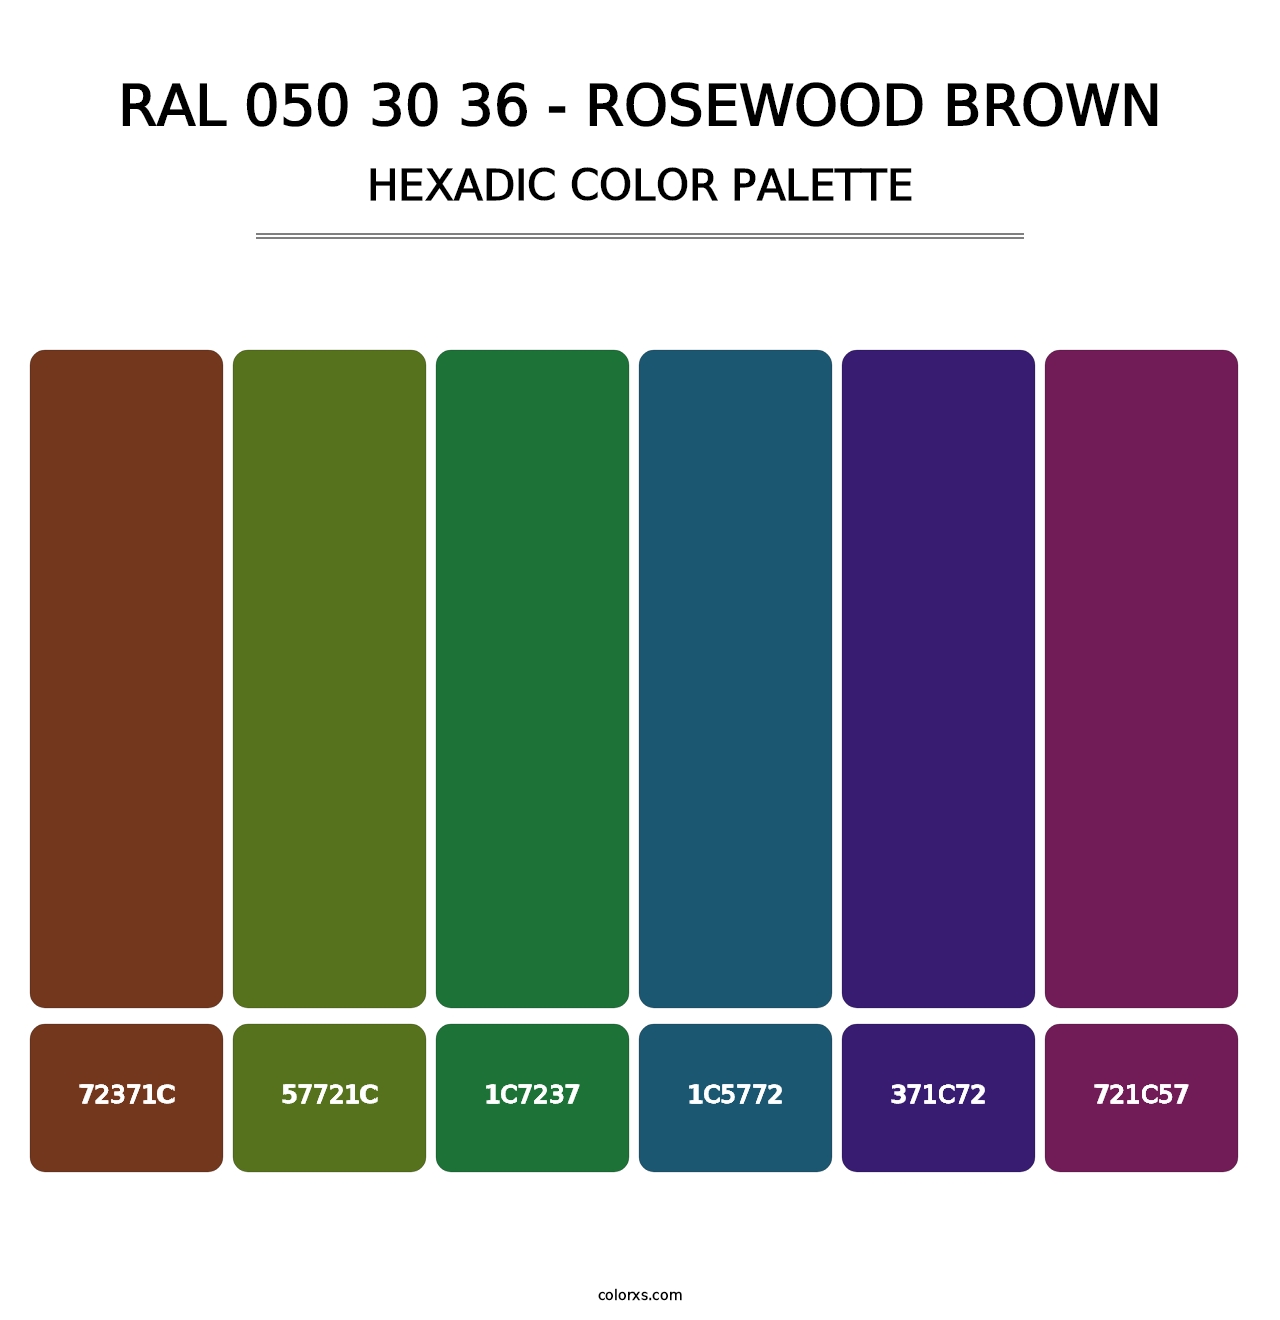 RAL 050 30 36 - Rosewood Brown - Hexadic Color Palette